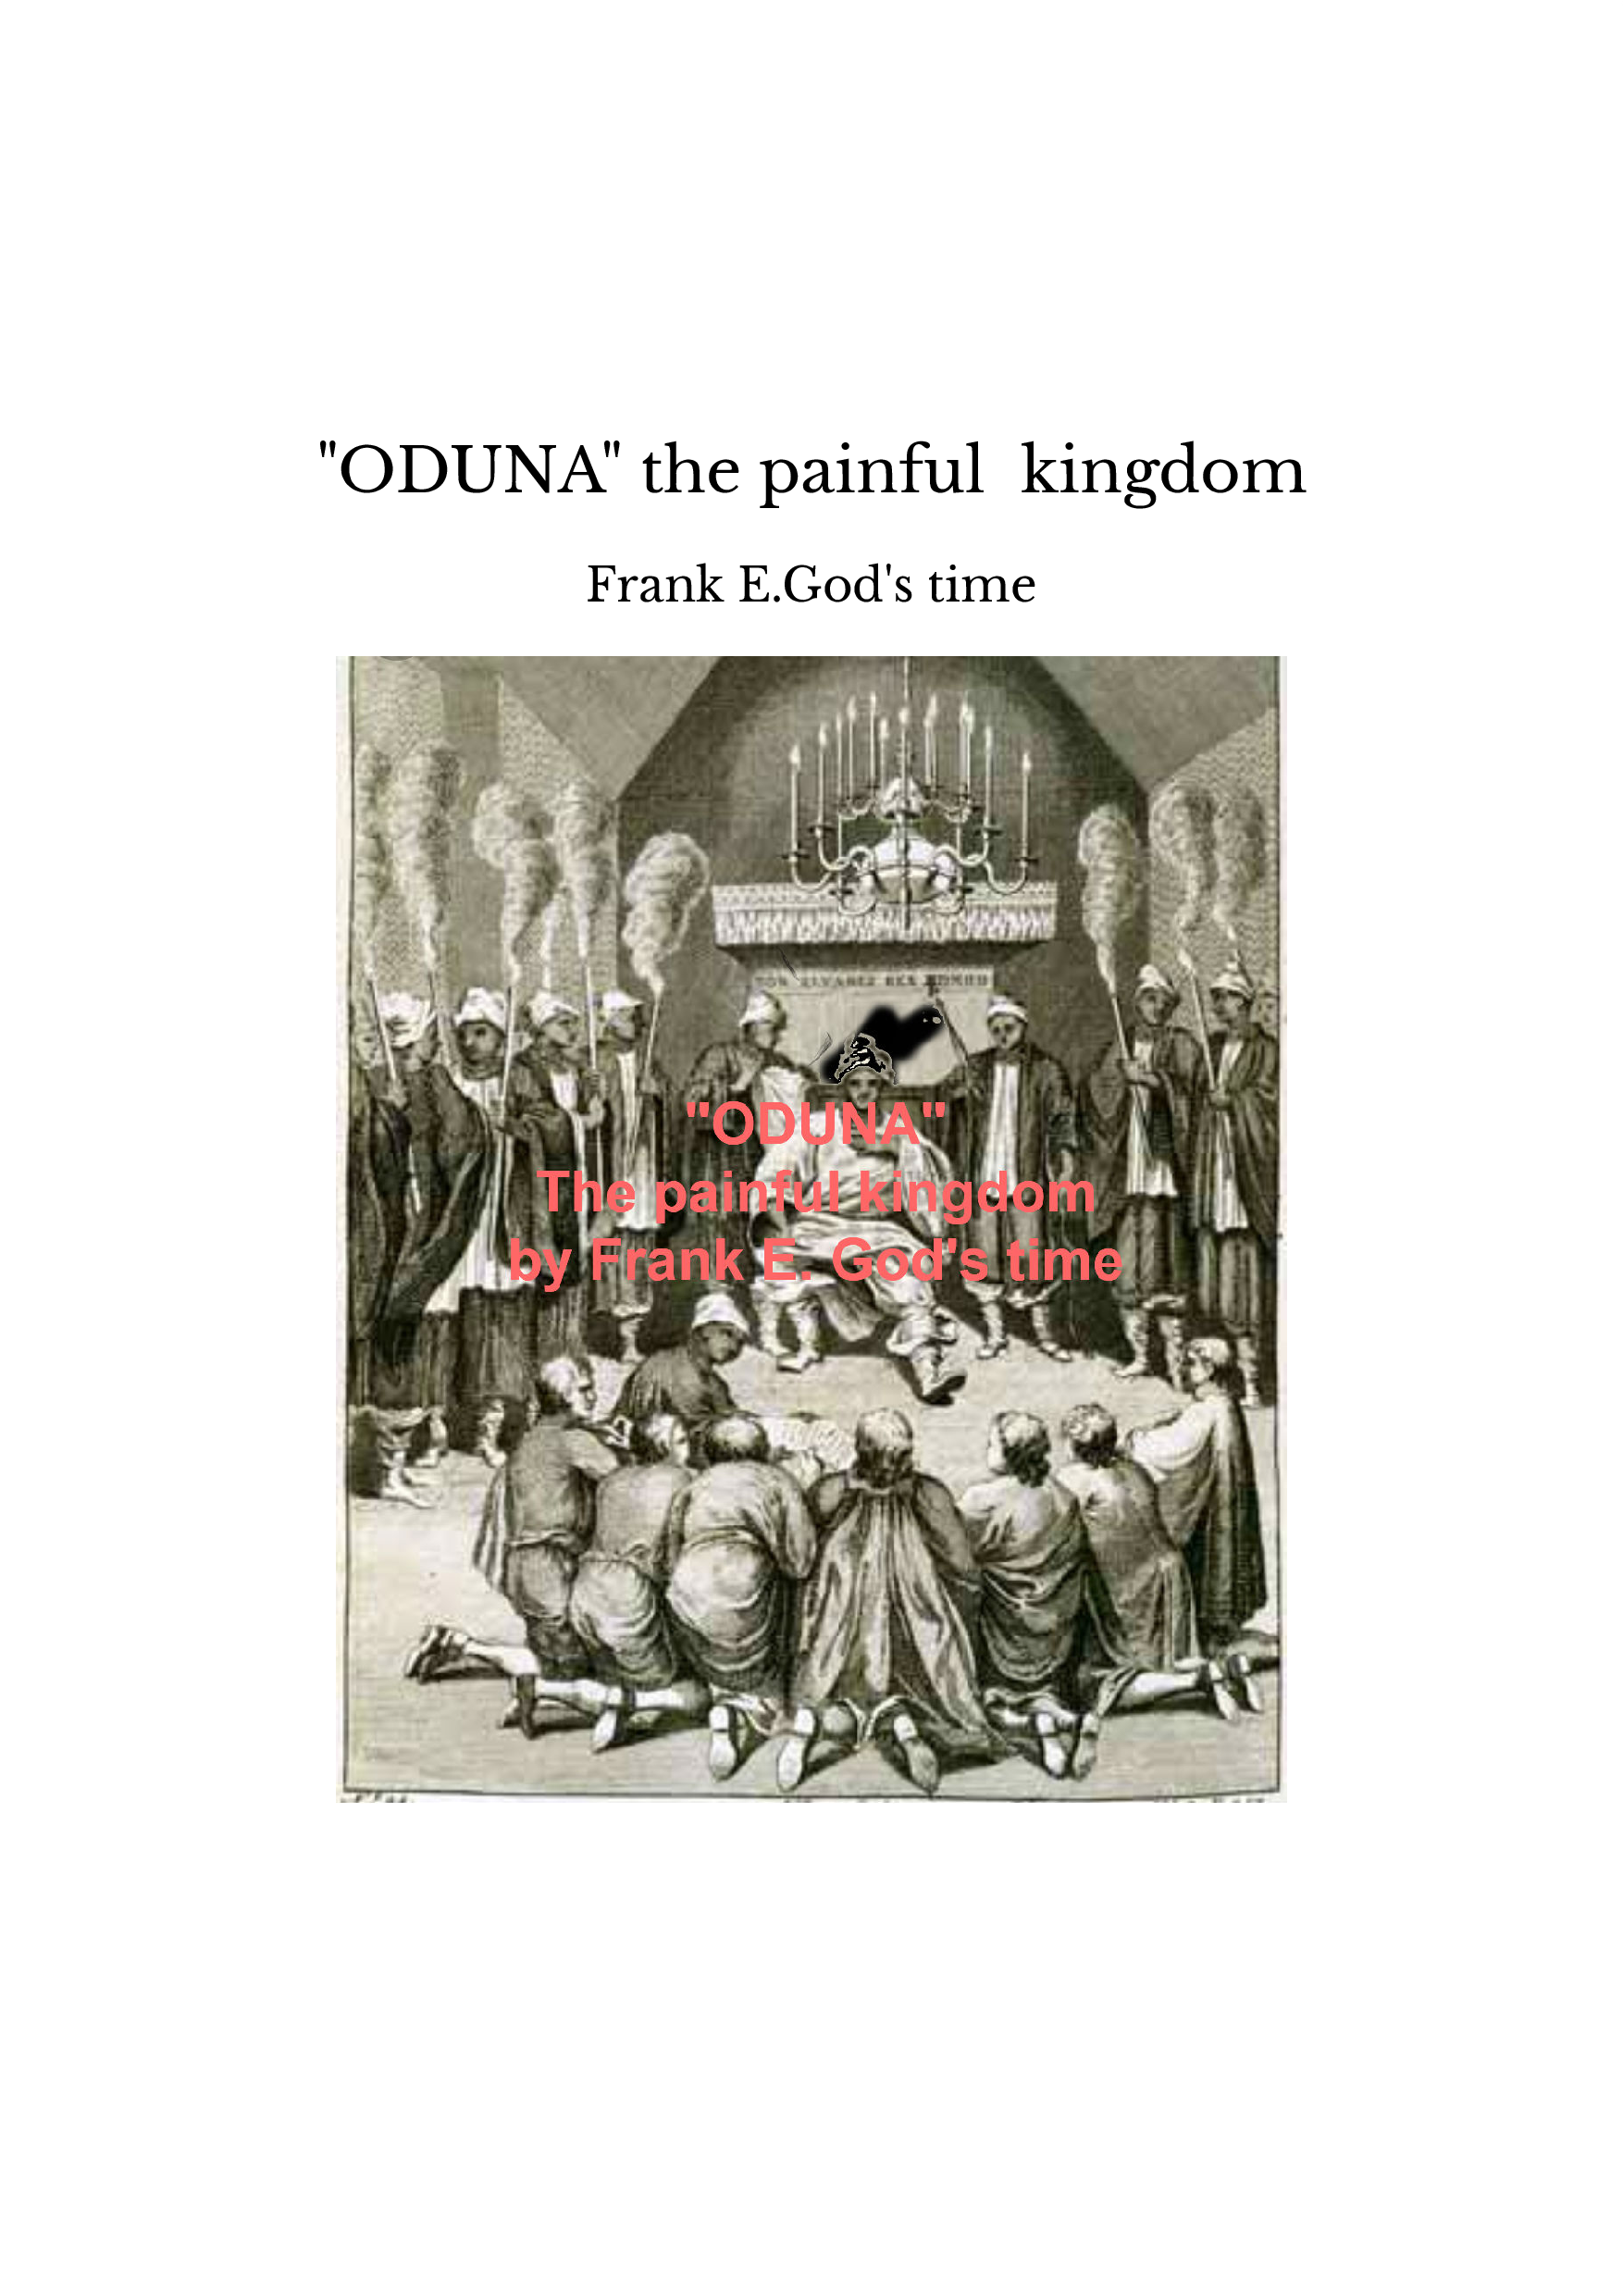 "ODUNA" the painful kingdom